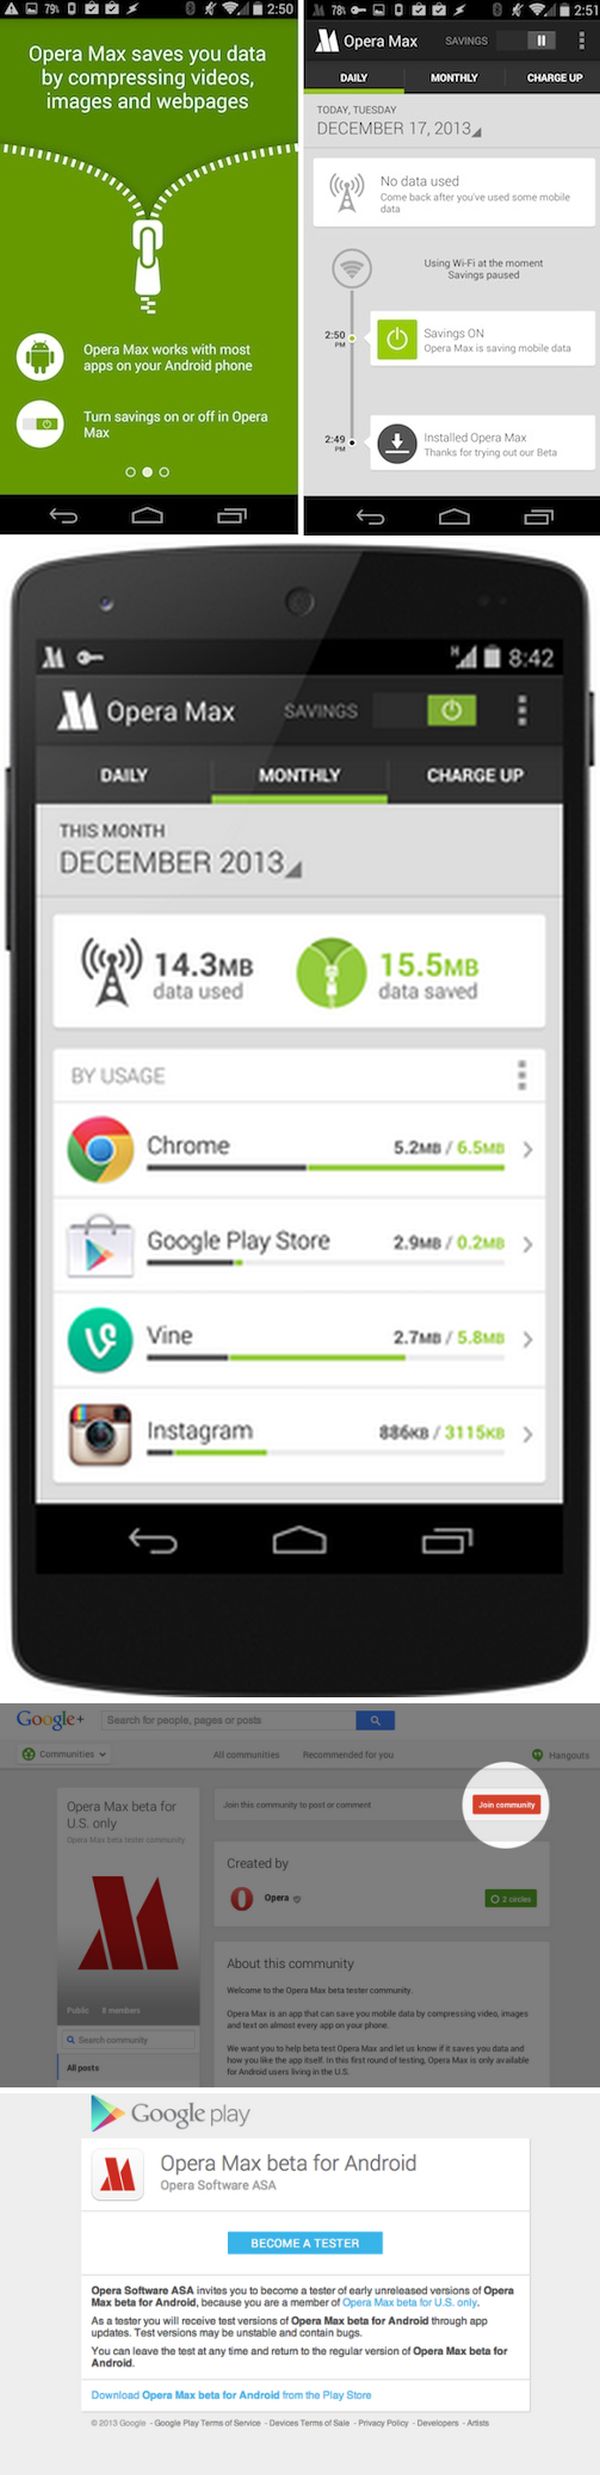 Opera Max: gazdálkodj okosan a mobilneteddel!